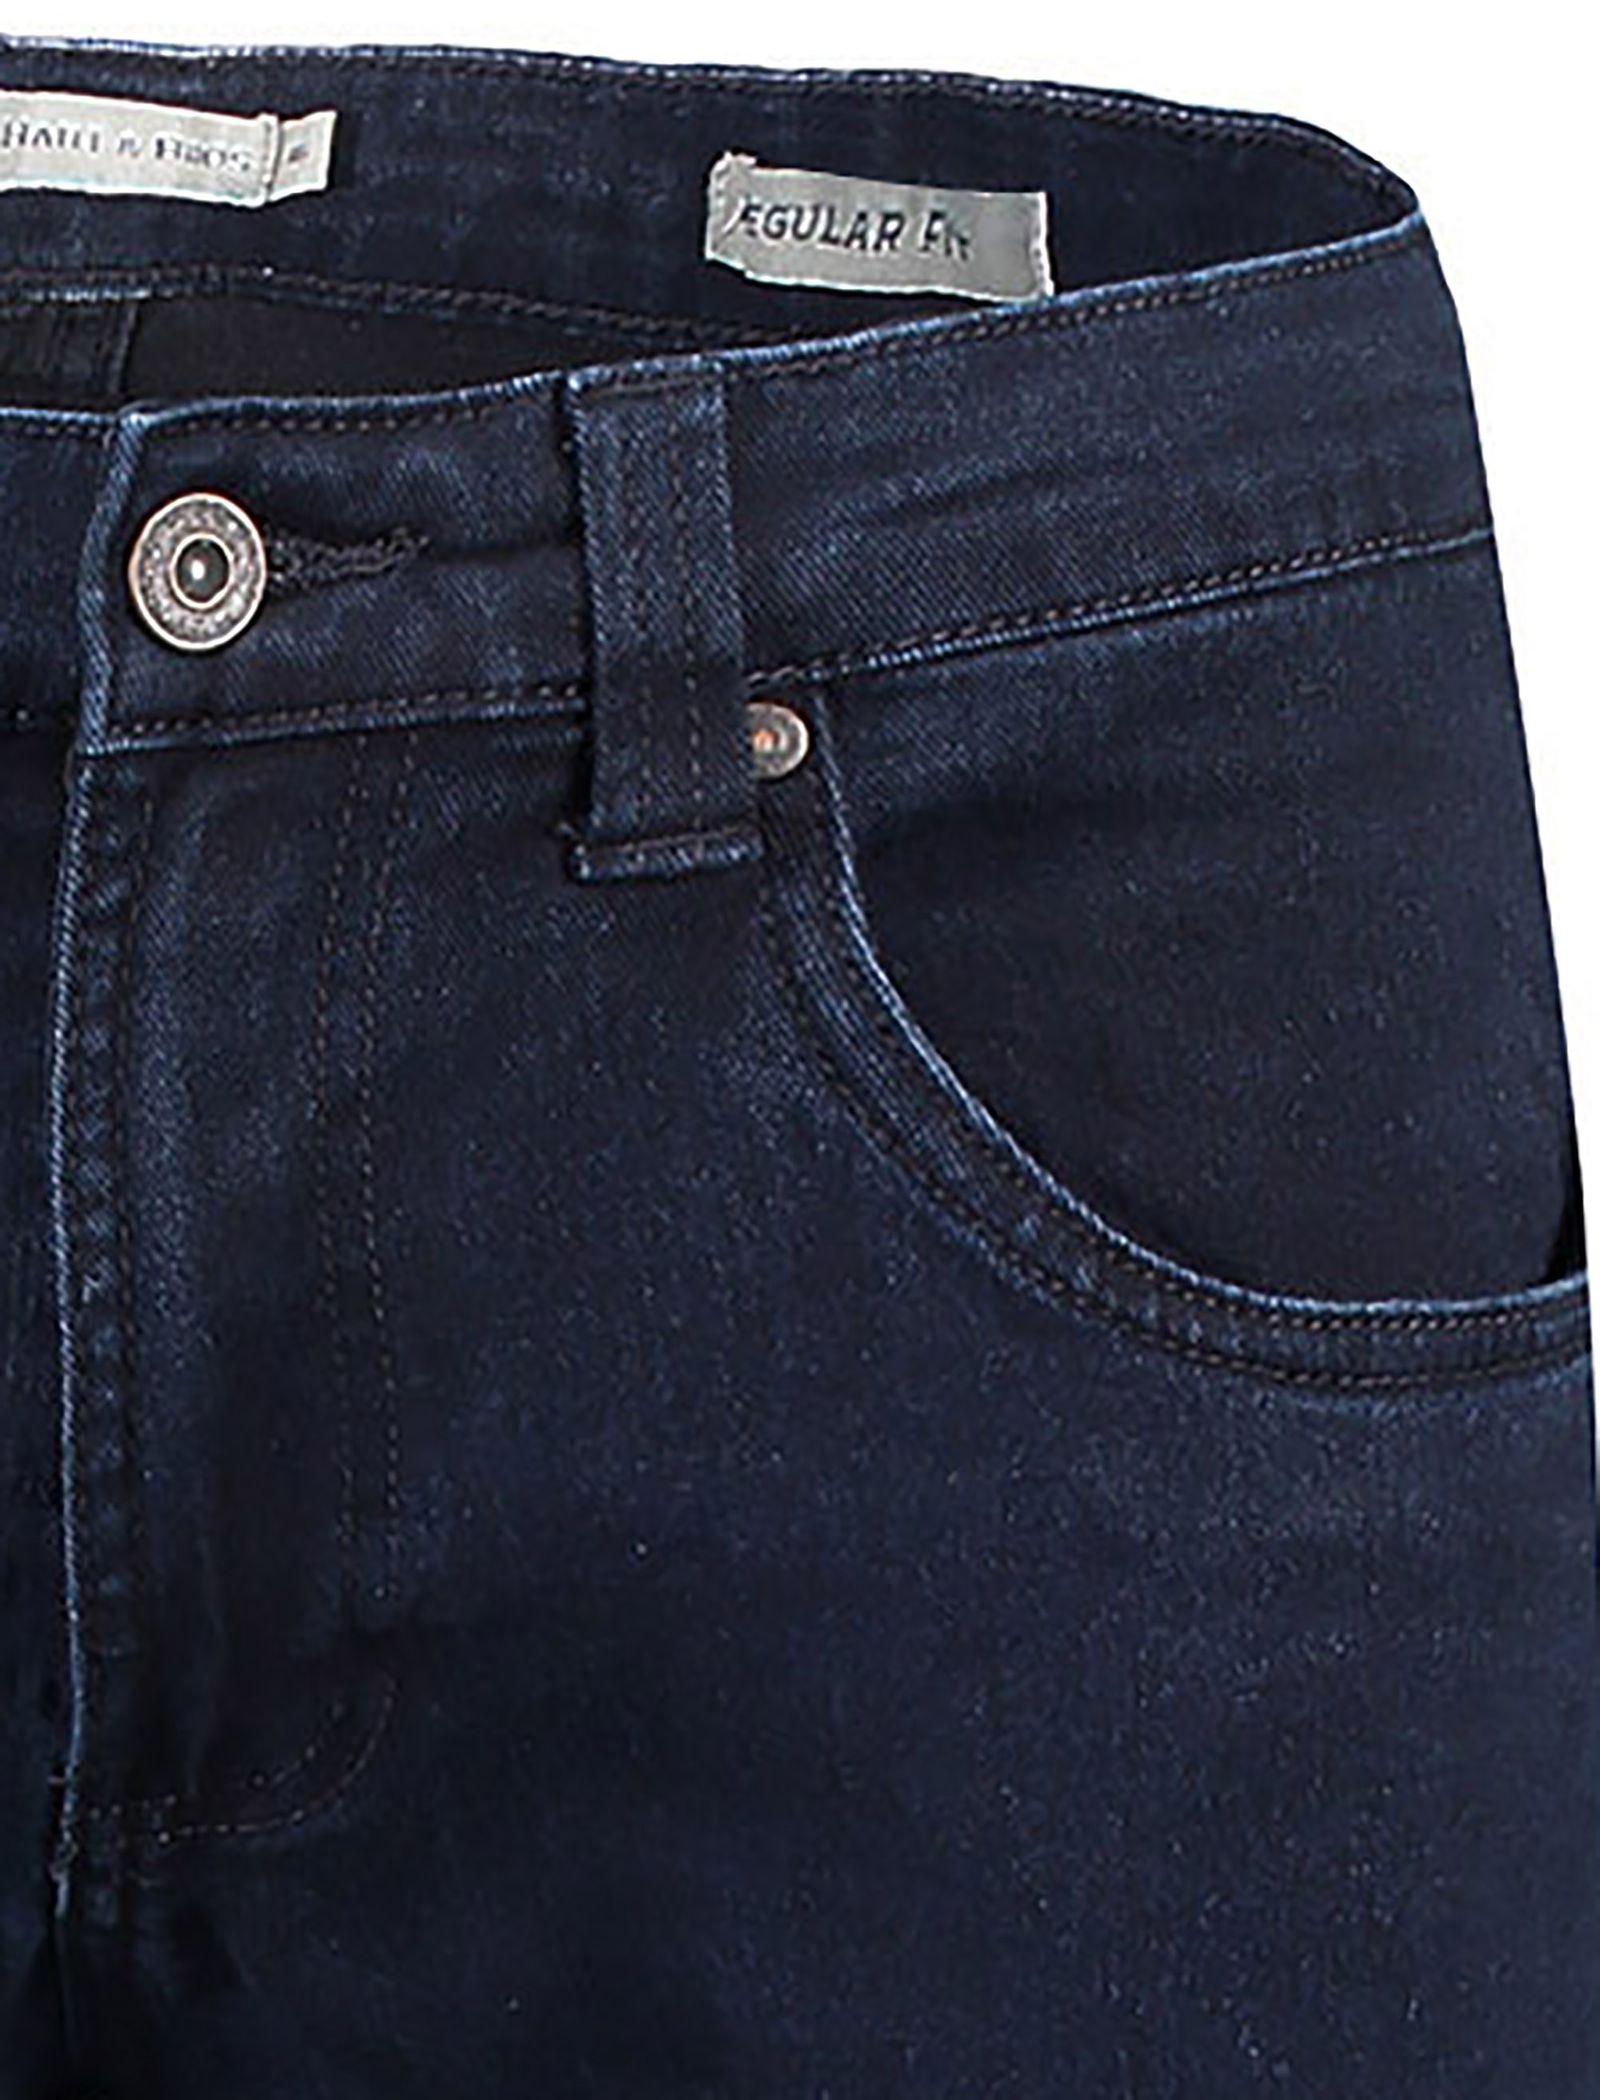 شلوار جین راسته مردانه - یوپیم - آبي تيره - 6